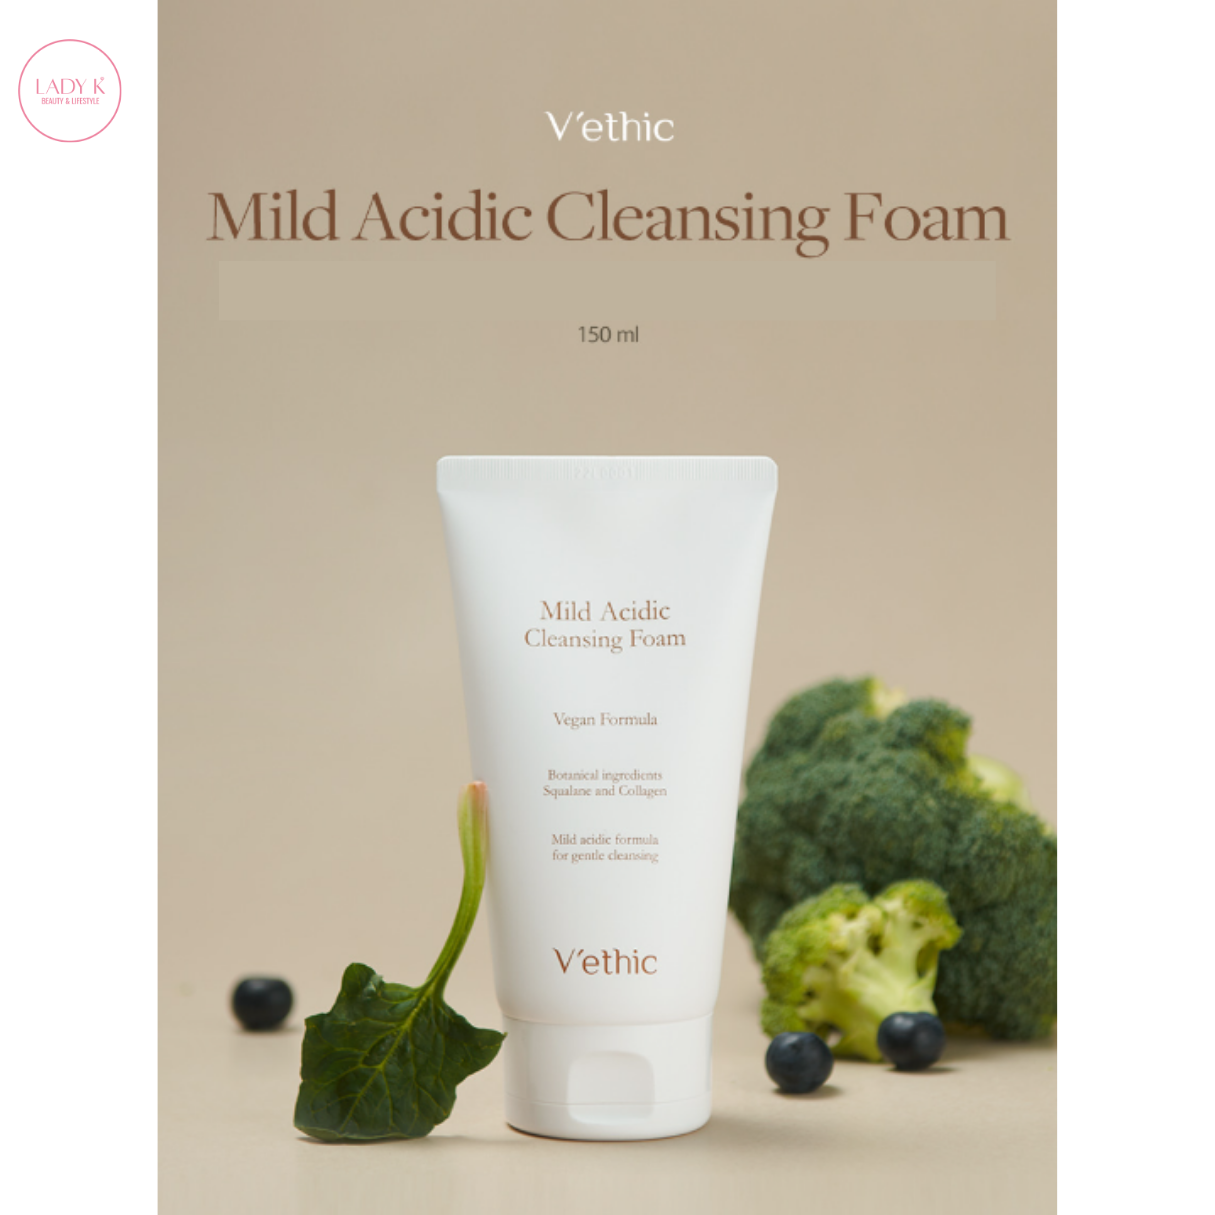 [Vethic] Mild Acidic Cleansing Foam